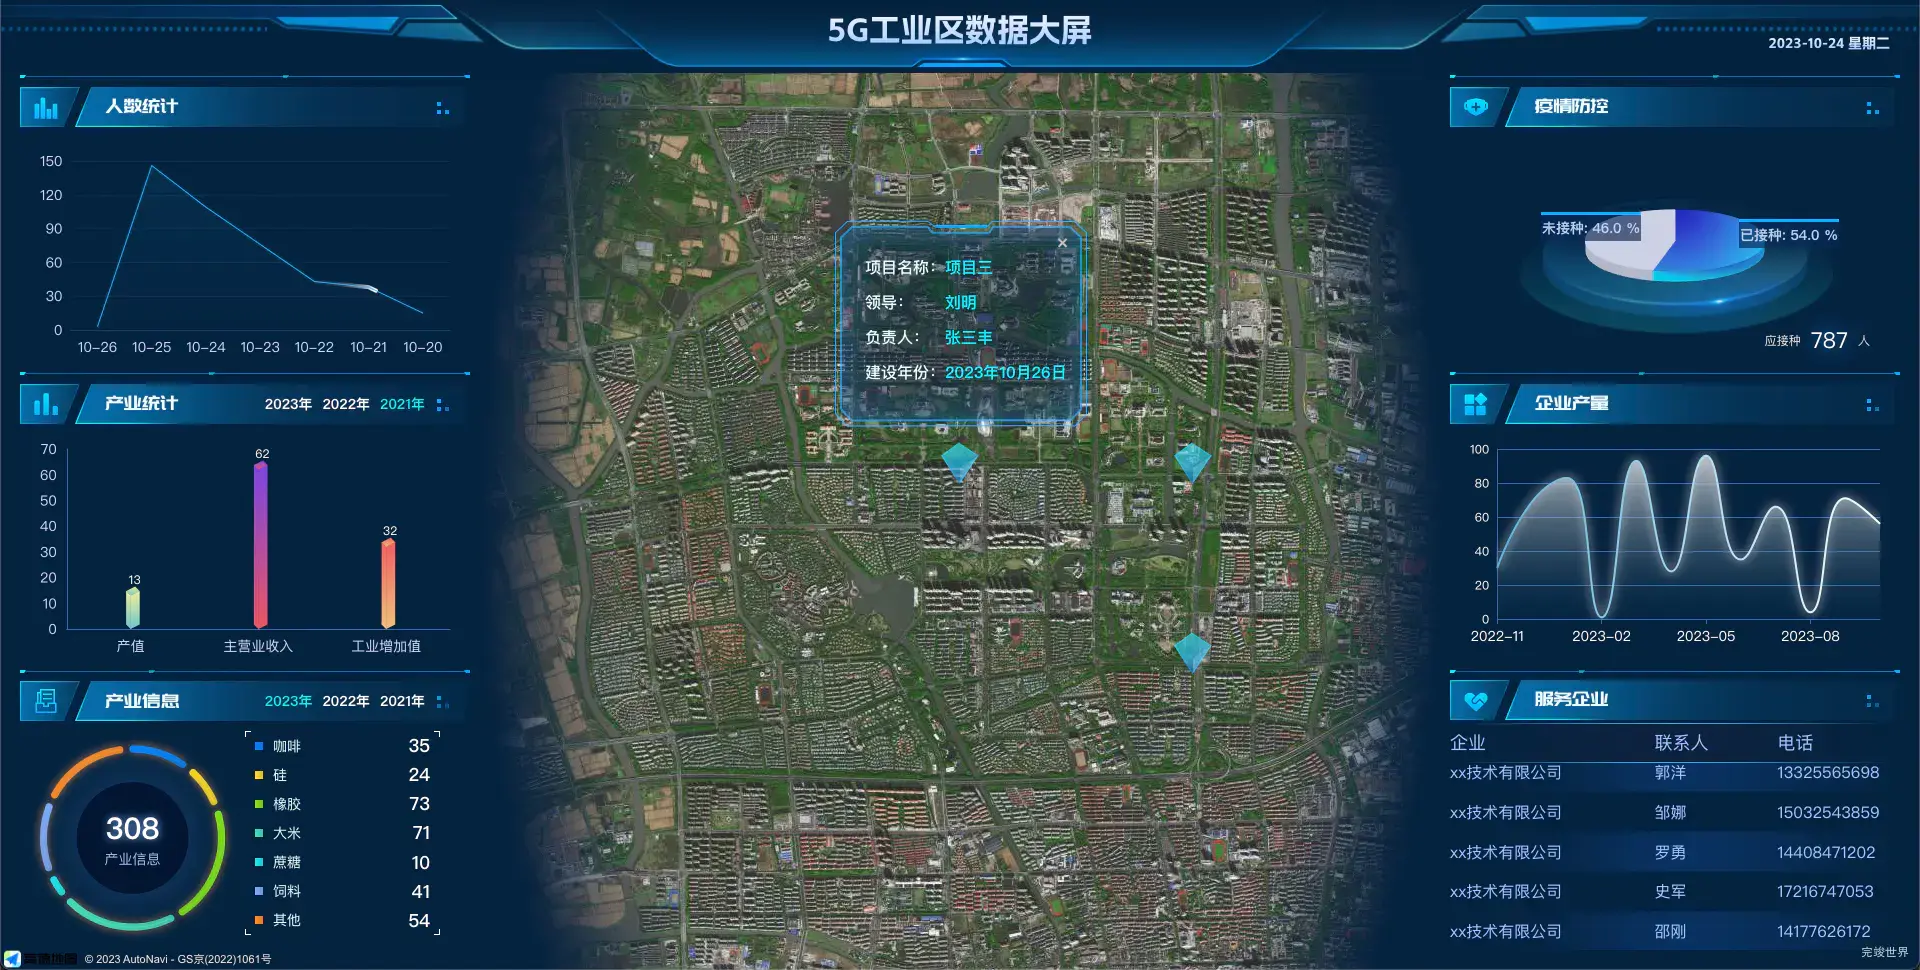 vue3 数据可视化大屏 5G工业区数据大屏